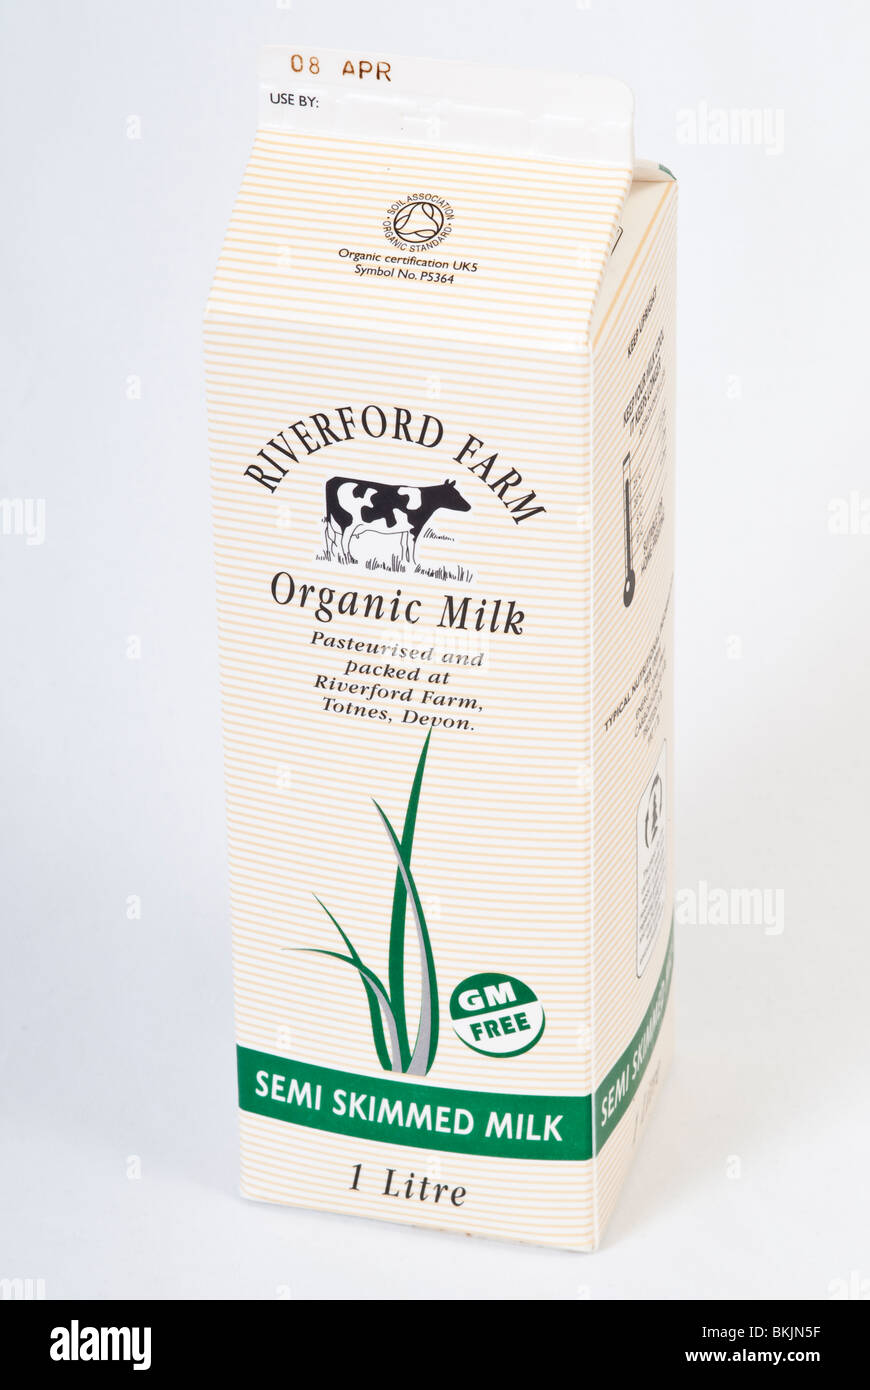 https://c8.alamy.com/comp/BKJN5F/carton-of-organic-milk-BKJN5F.jpg